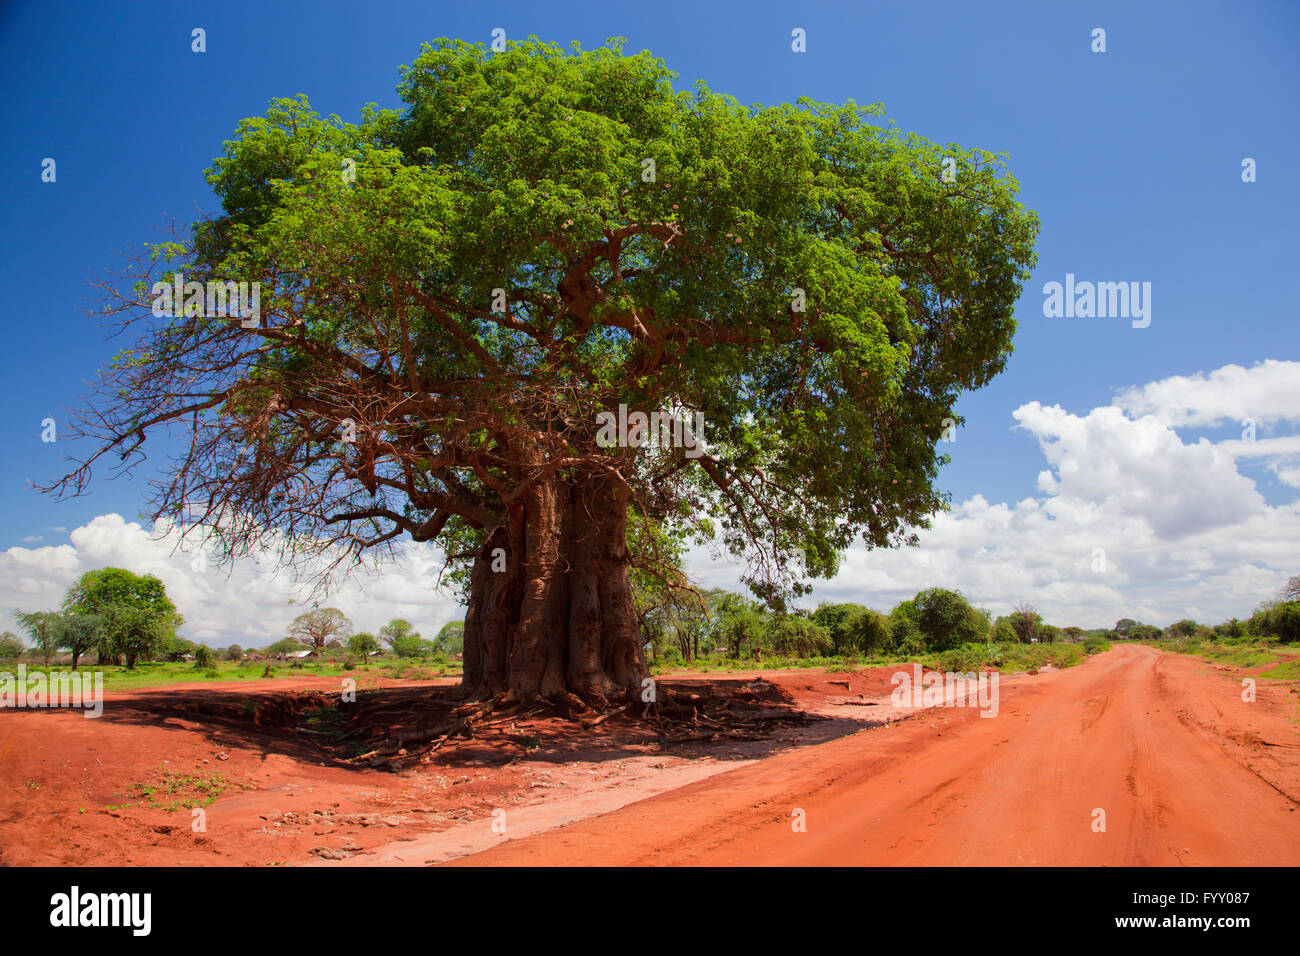 Baobab tree on red soil road, Kenya, Africa Stock Photo